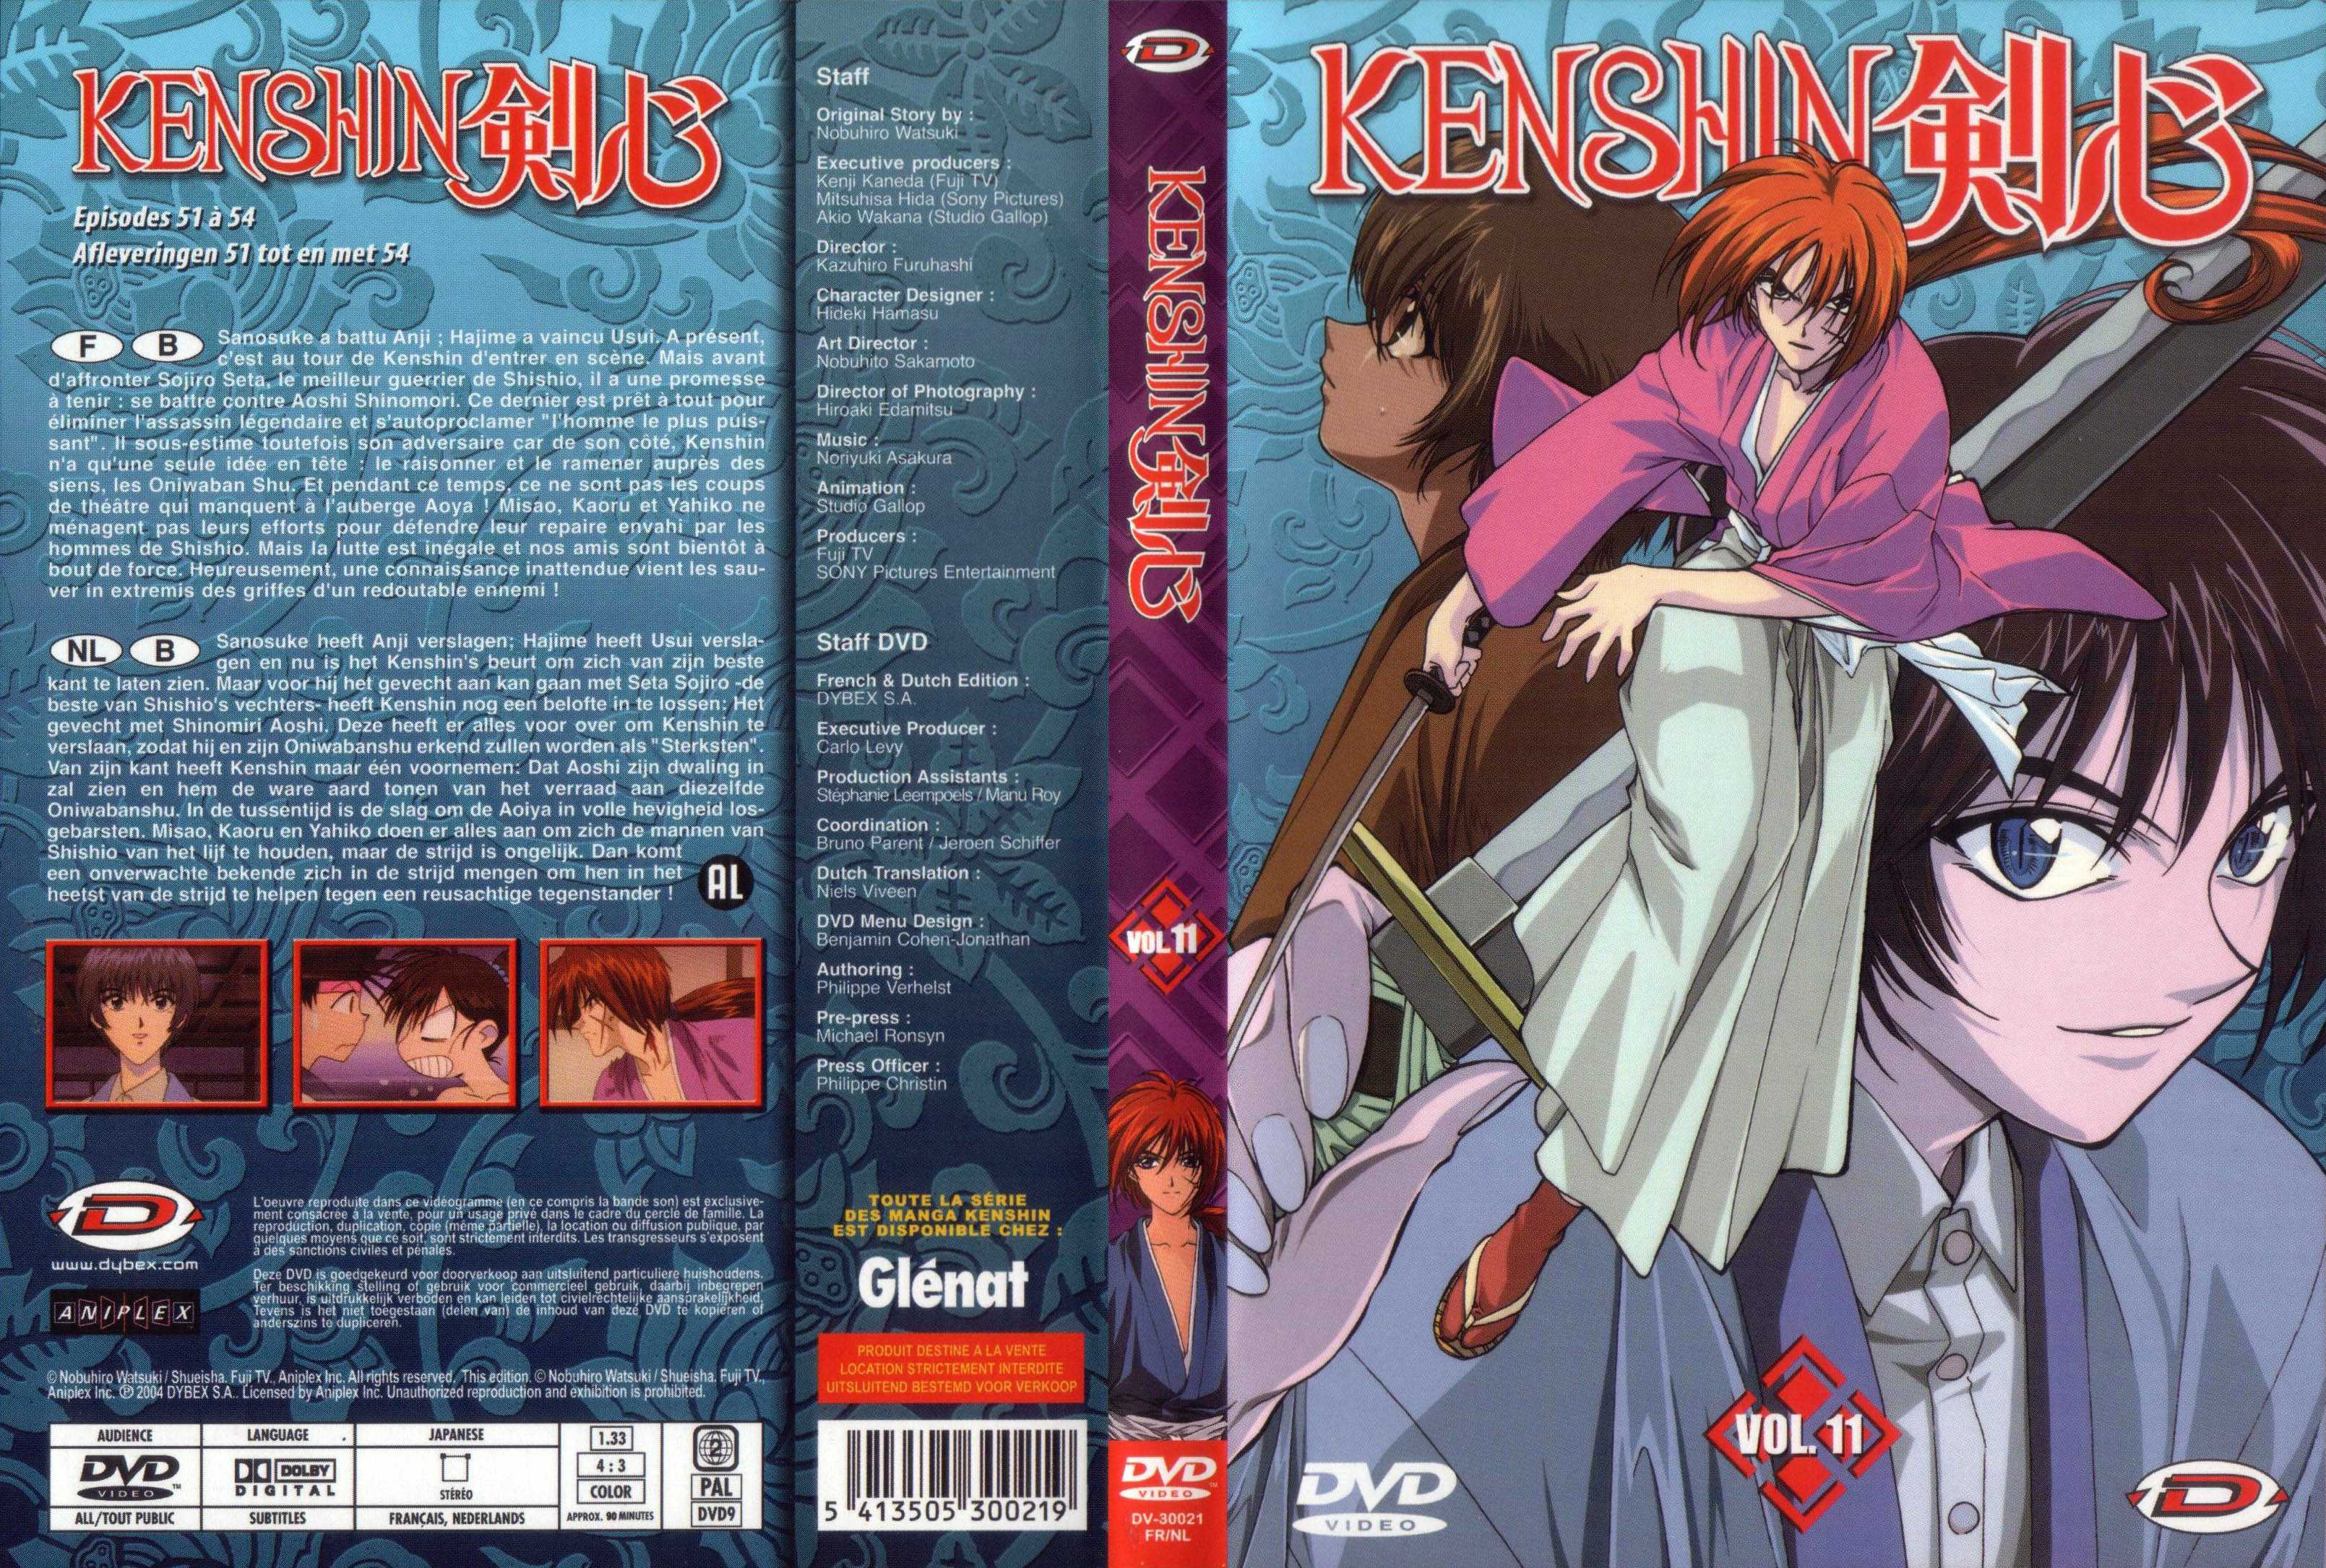 Jaquette DVD Kenshin vol 11